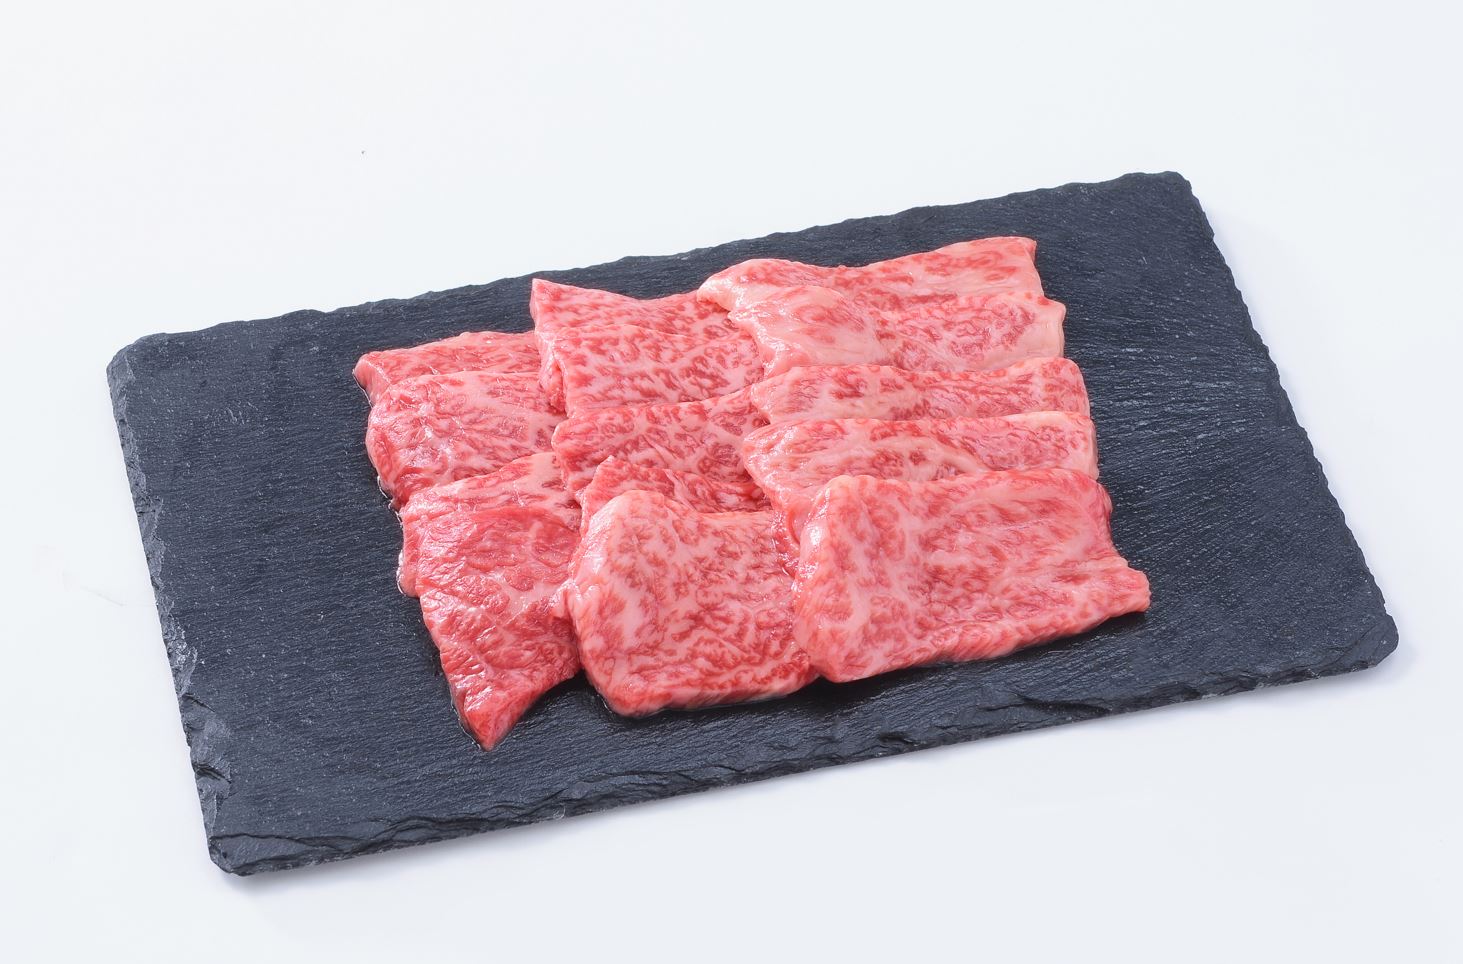 部位食べ比べセット 計約1.2kg / しゃぶしゃぶ・ステーキ・焼肉・煮込み 神戸牛 牛肉 詰め合わせ セット 霜降り 但馬牛 和牛 国産牛 エスフーズ